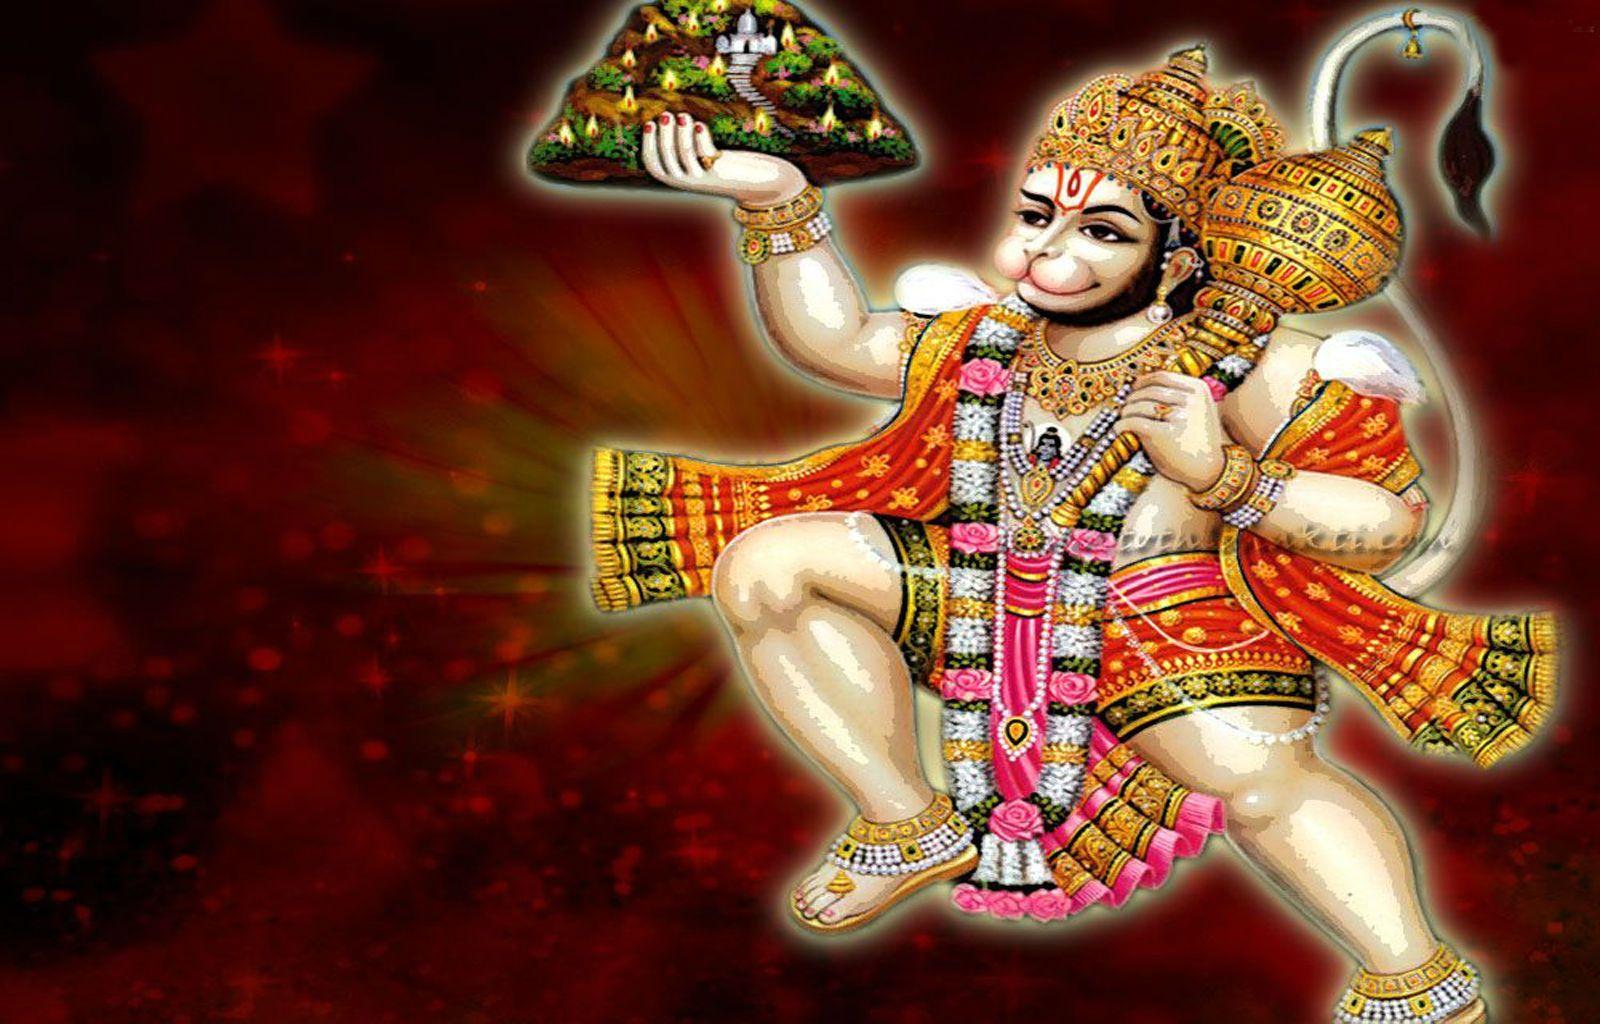 Free download Hanuman desktop Wallpaper & image